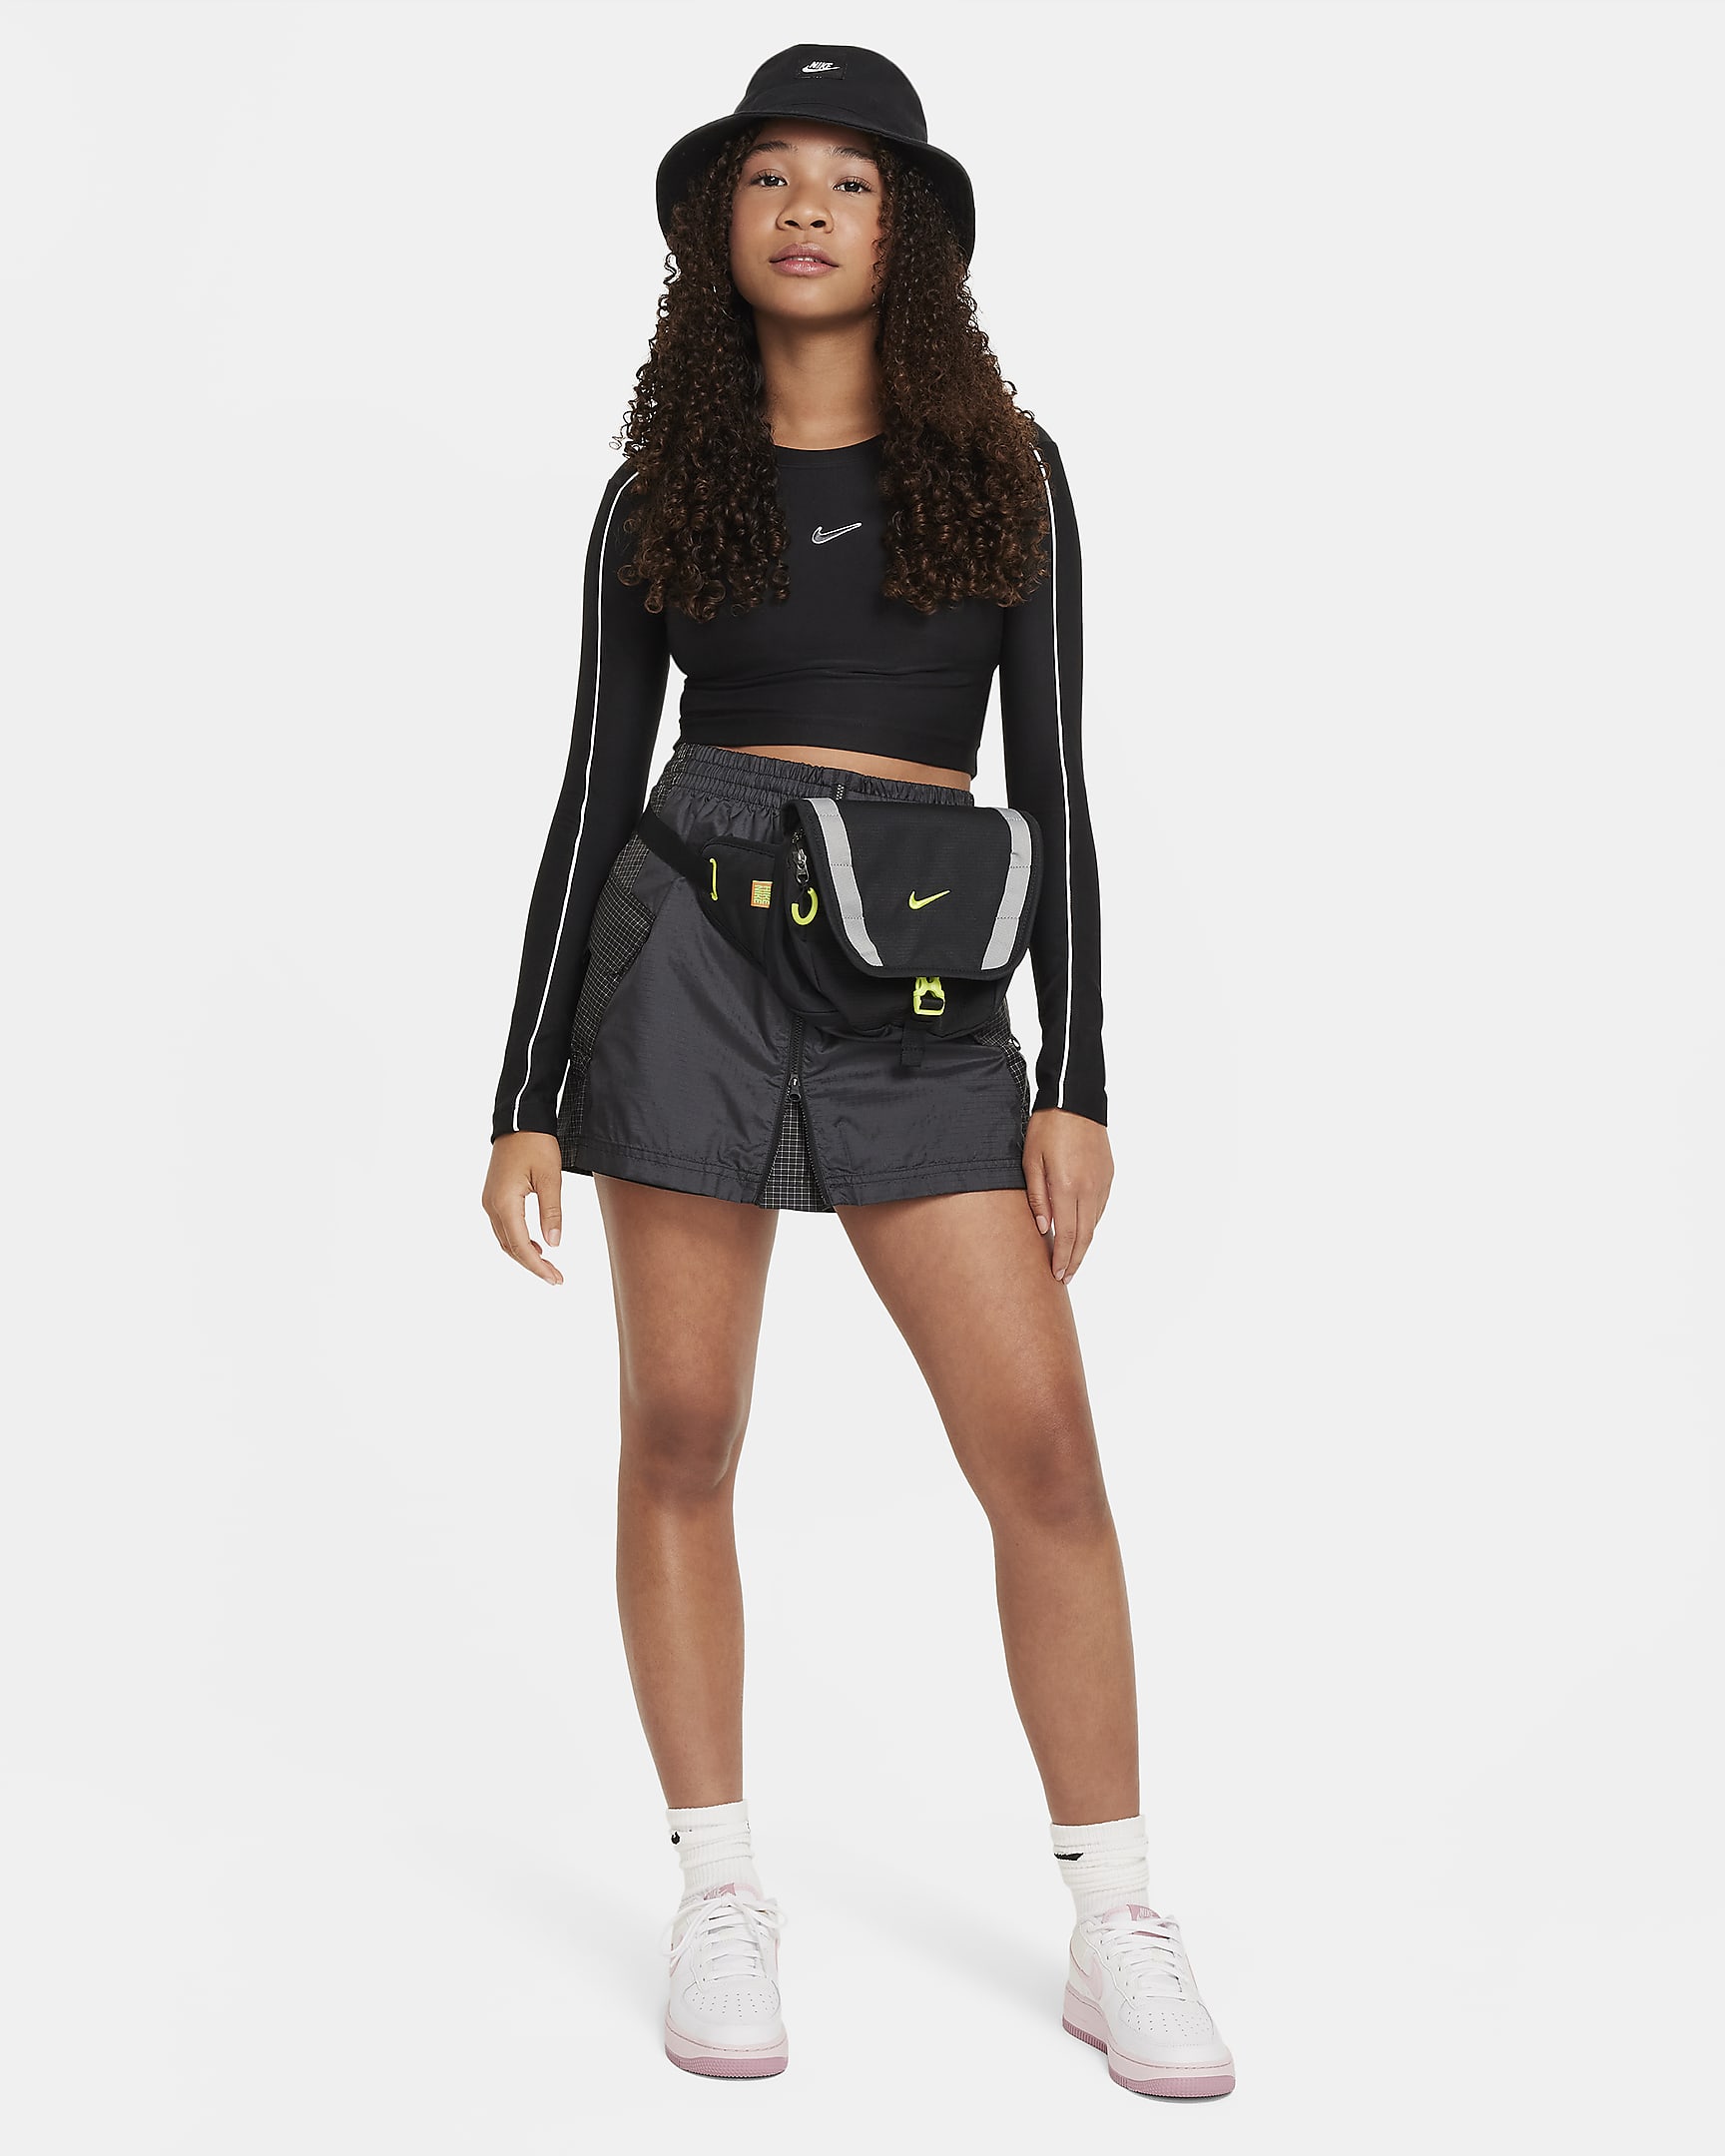 Nike Sportswear Older Kids' (Girls') Long-Sleeve Cropped Top. Nike CH